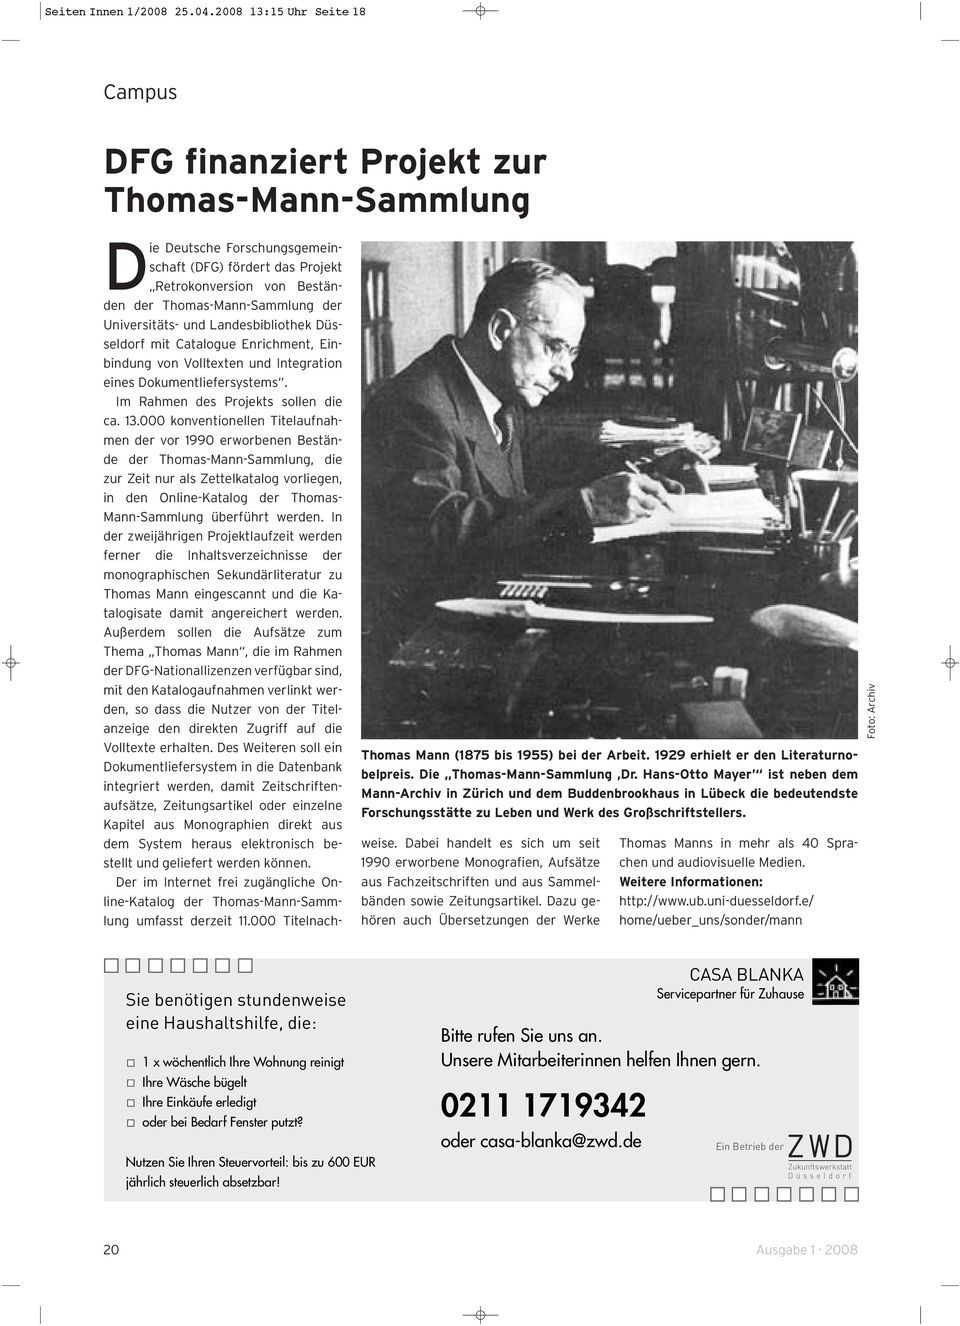 Die Deutsche Forschungsgemeinschaft (DFG) fördert das Projekt Retrokonversion von Beständen der Thomas-Mann-Sammlung der Universitäts- und Landesbibliothek Düsseldorf mit Catalogue Enrichment,